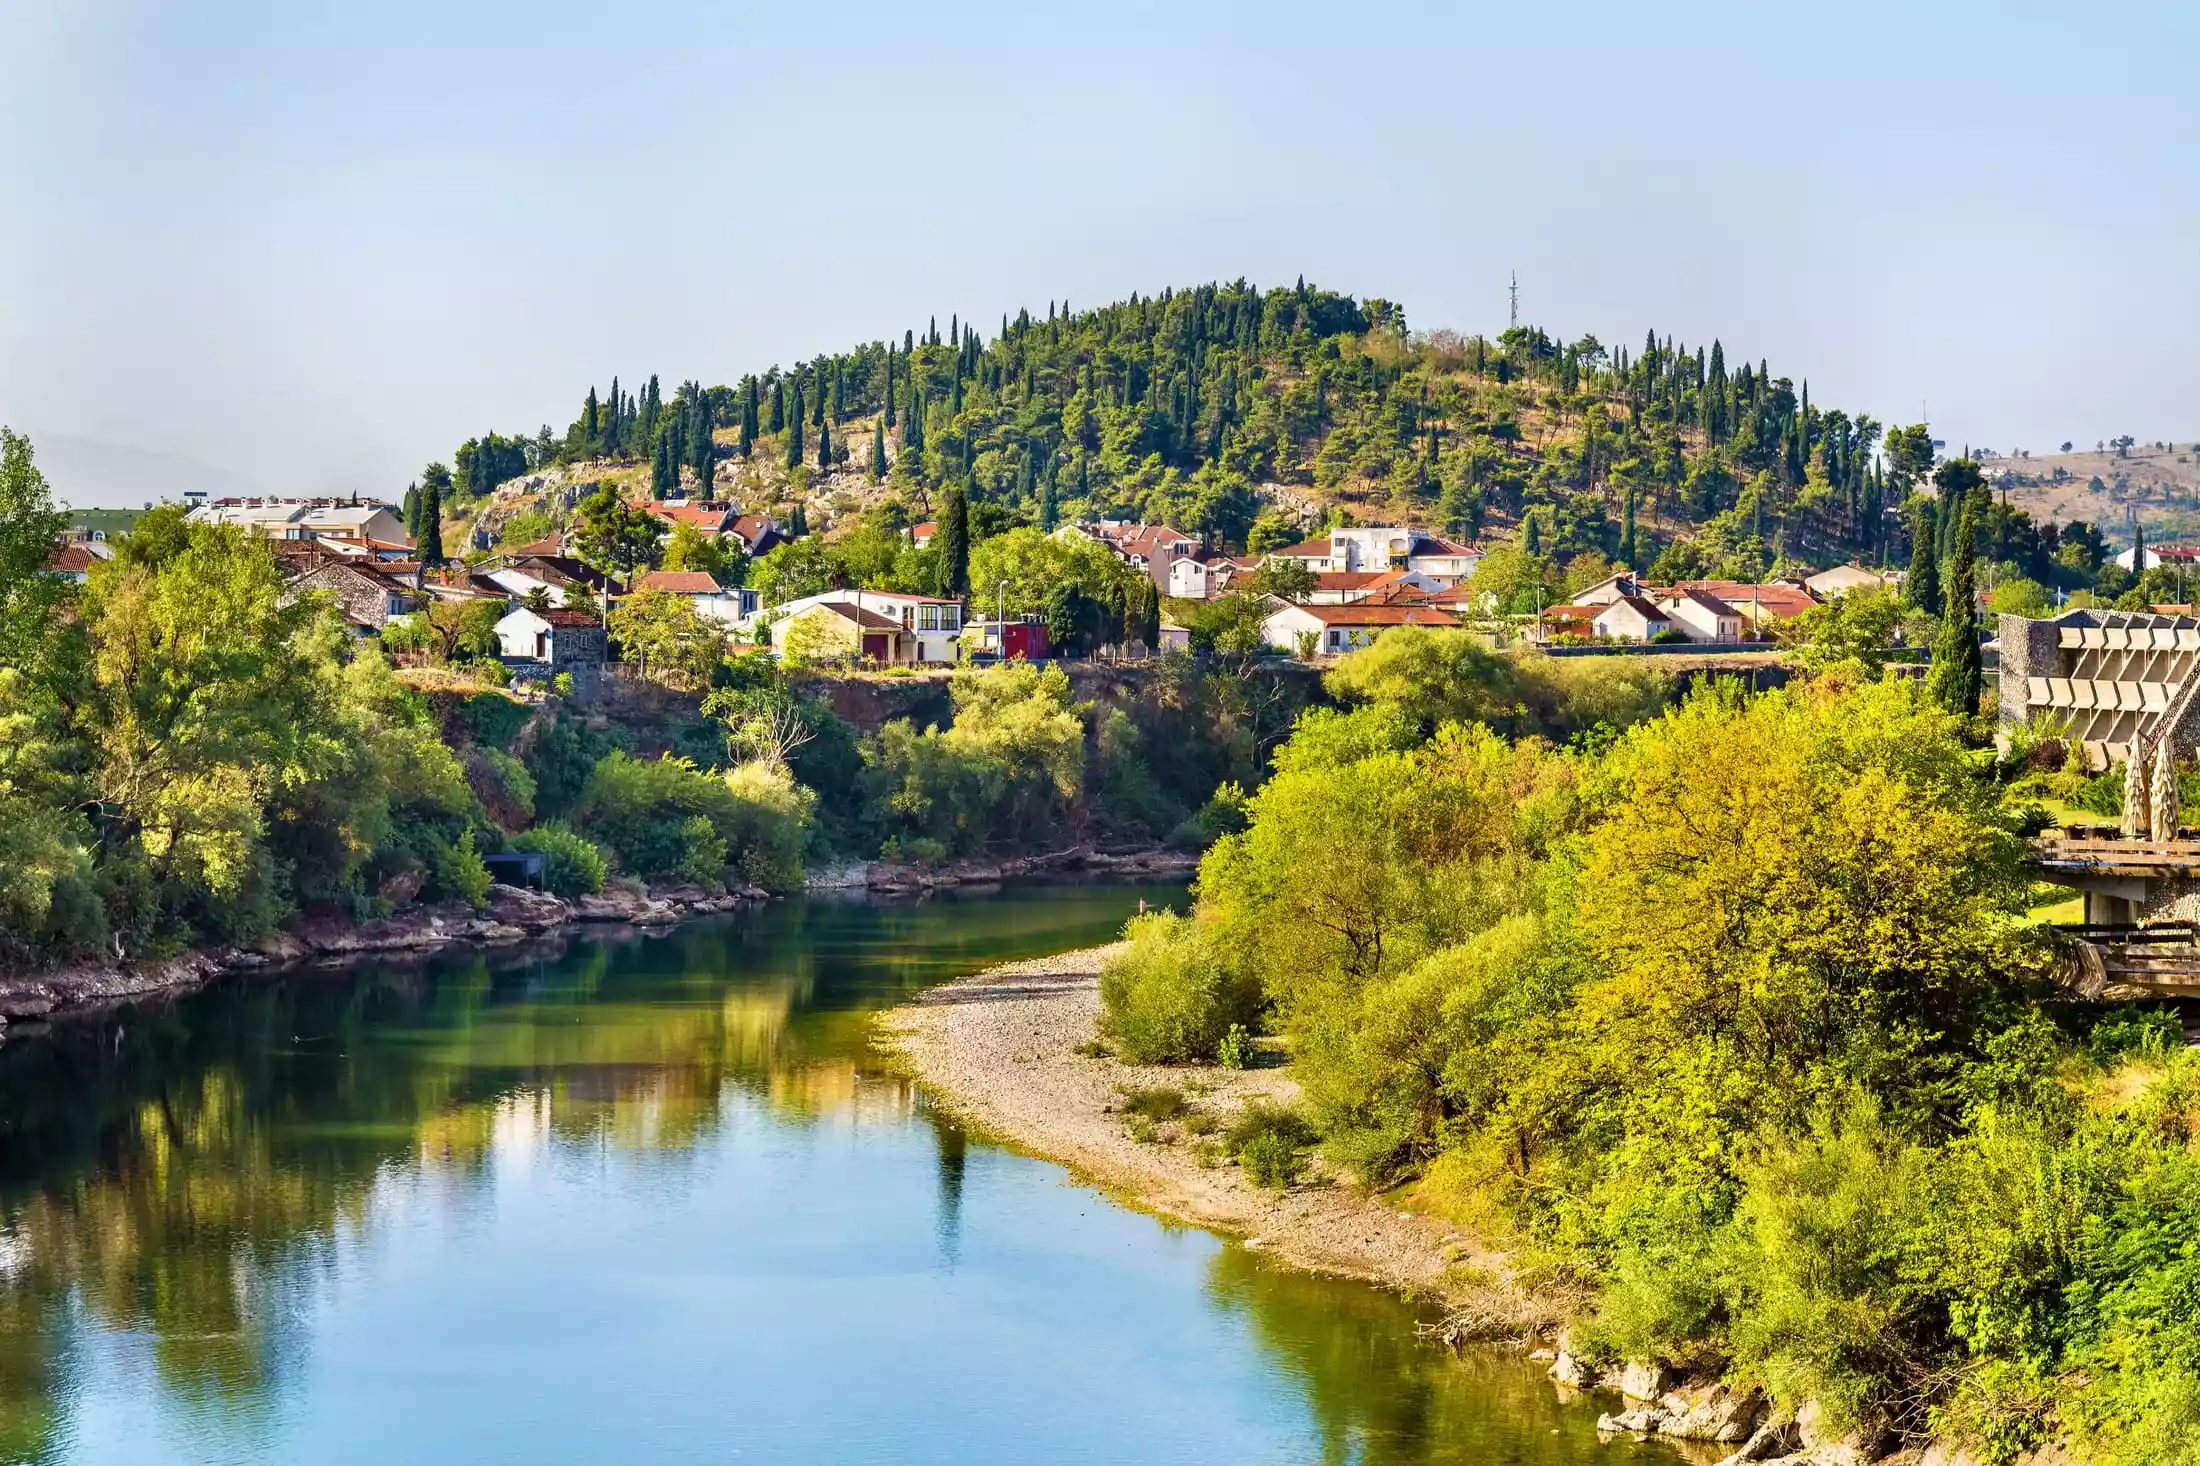 Morača river in Podgorica during a sunny day